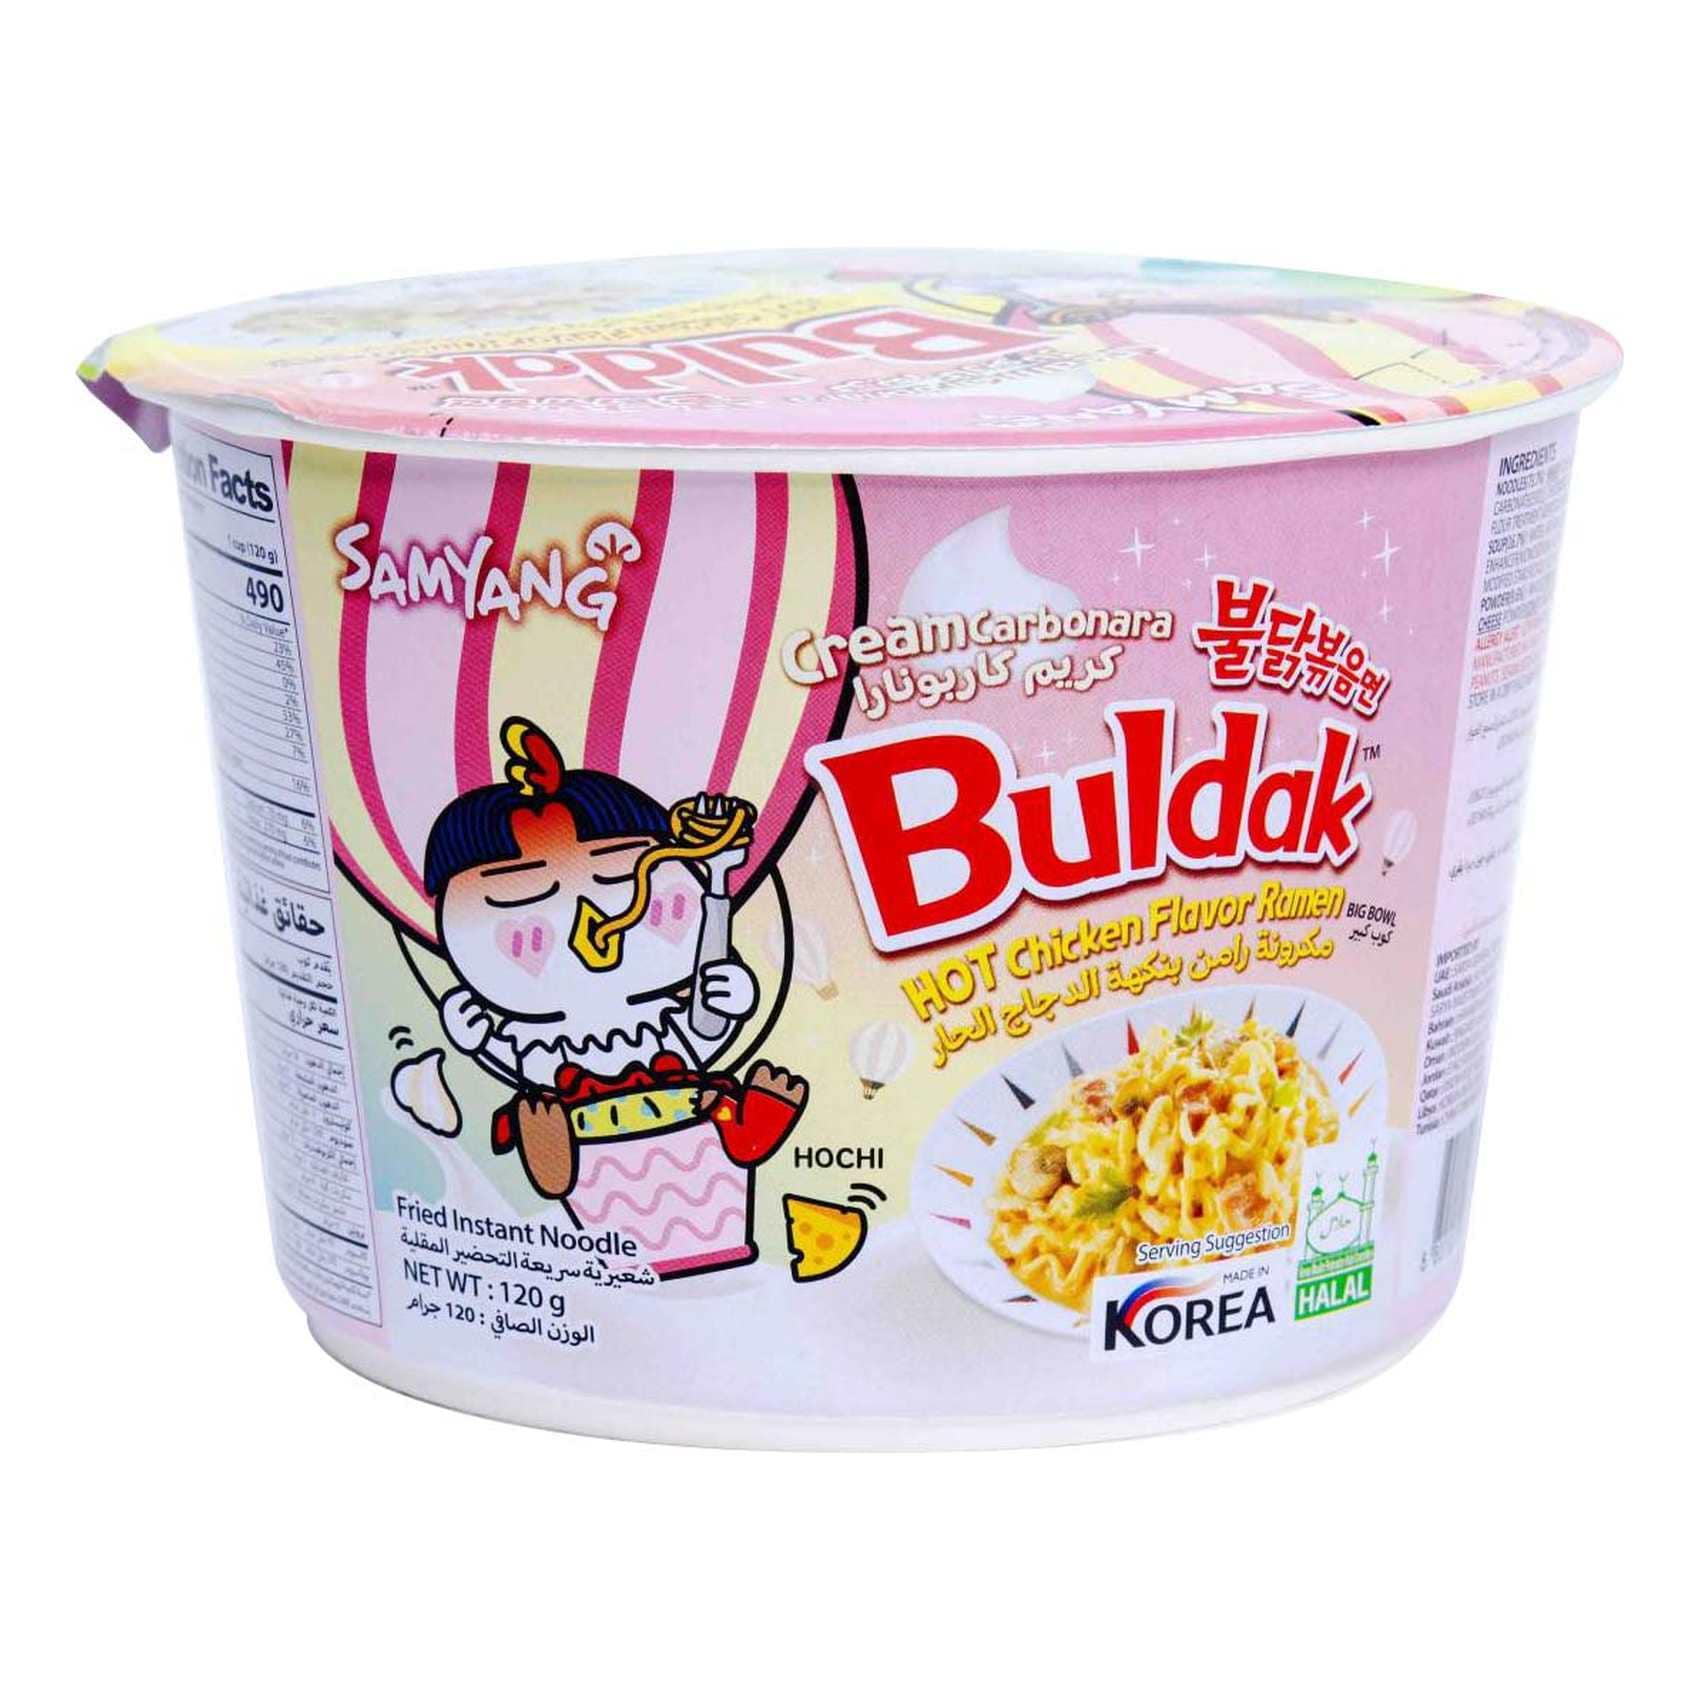 Samyung Buldak flavour Dehydrated Veg Powder Korean Cream Carbonara Premix,  10, 1 kg at Rs 500/kg in Ahmedabad